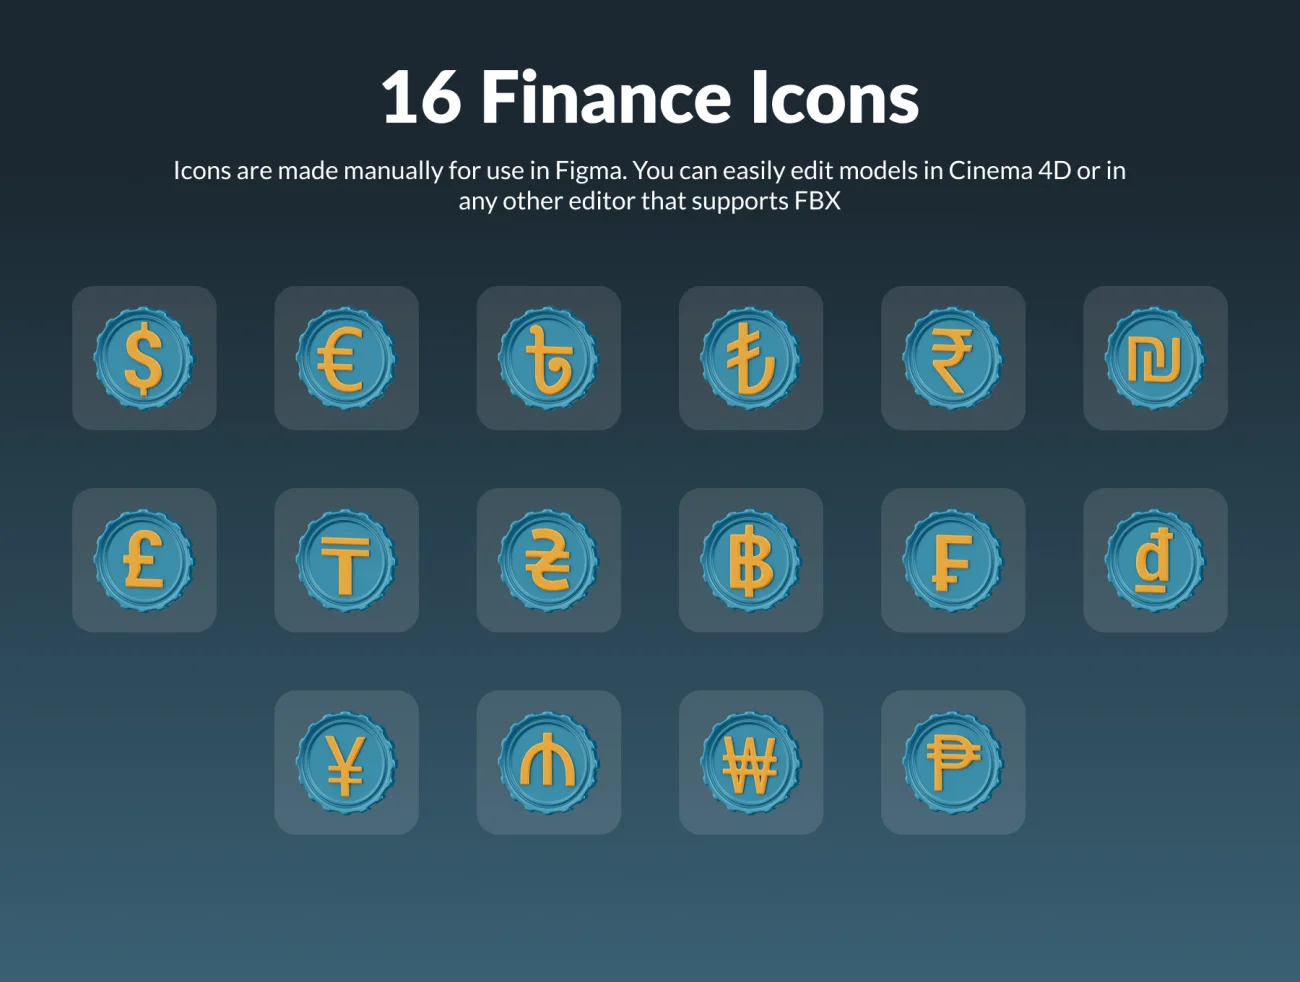 货币符号3D图标模型16款欧元美元英镑法郎人民币符号 Money Signs 3D Icon Set-3D/图标-到位啦UI